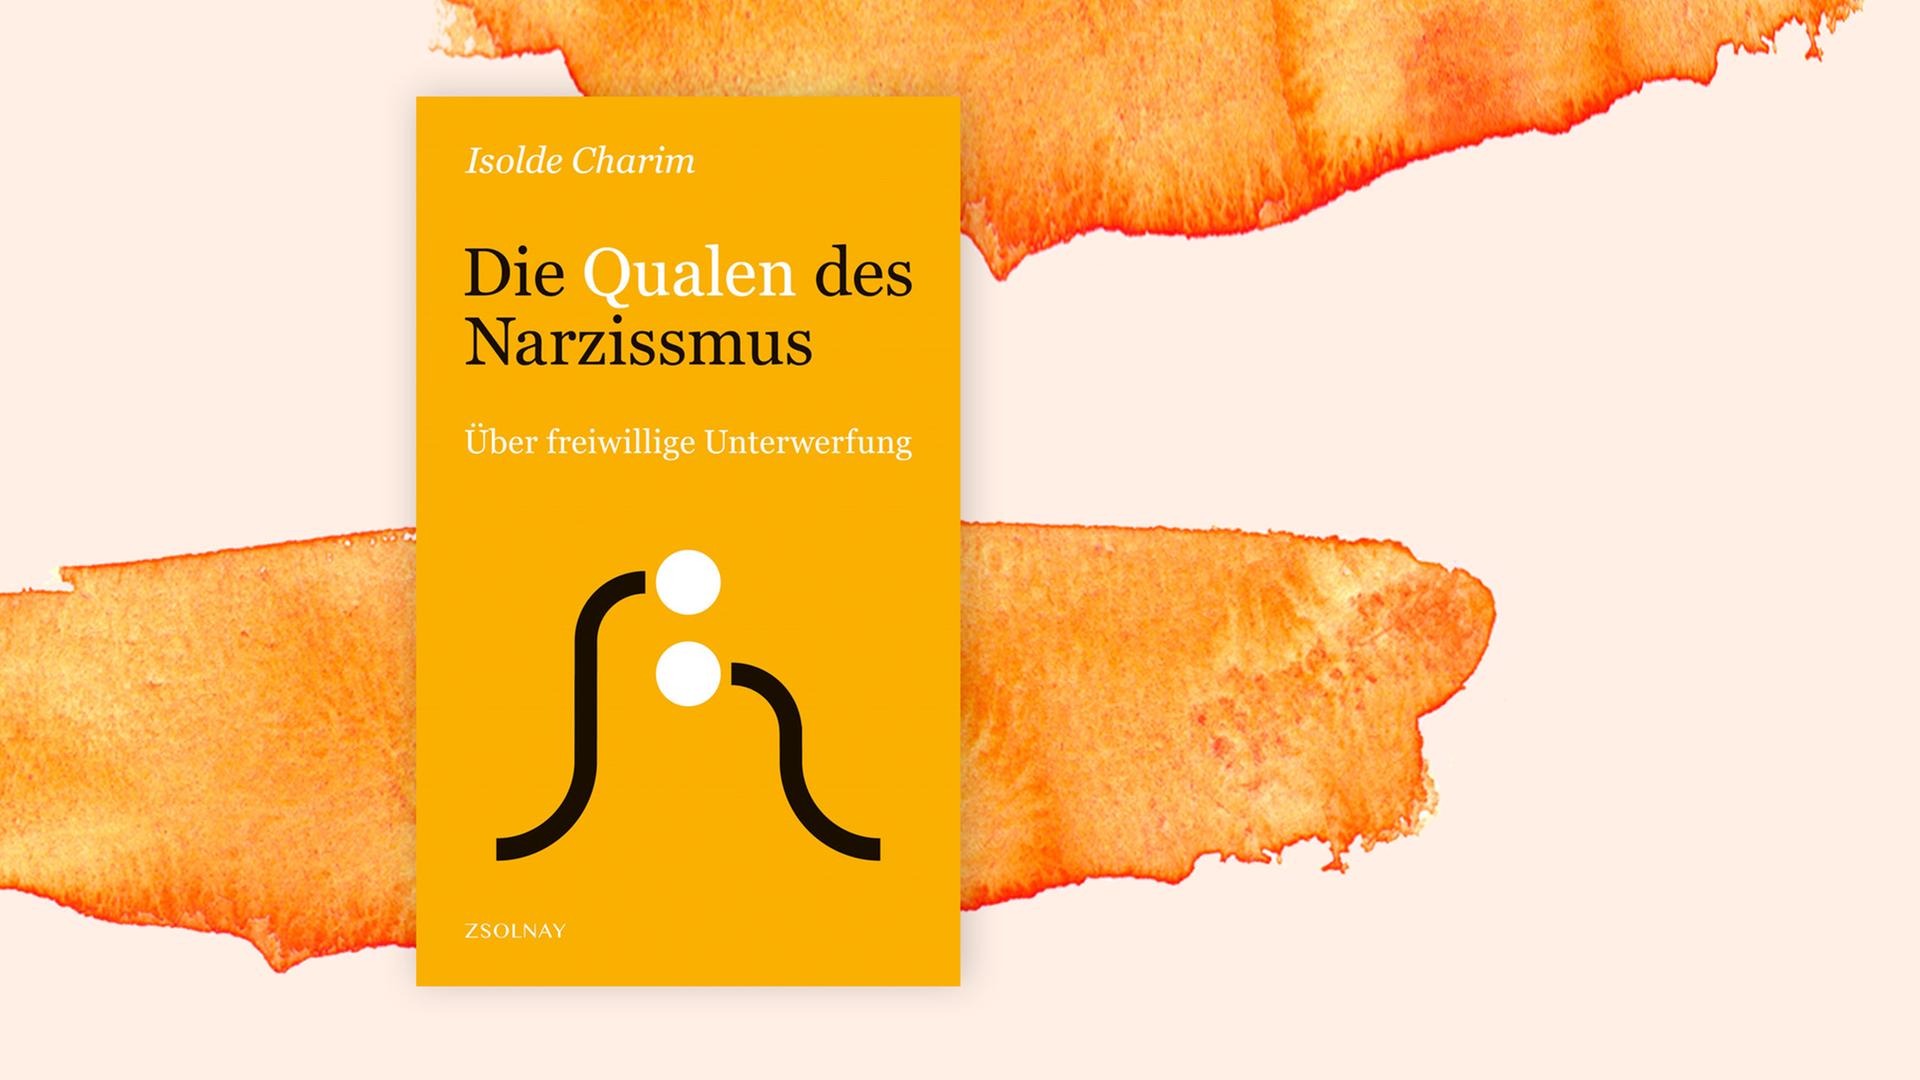 Covercollage mit dem Cover des Buches "Die Qualen des Narzissmus" von Isolde Charim. Auf dem Cover zwei kurvige Linien und zwei übereinanderliegende, weiße Punkte. Dies könnten stilisierte Menschen sein, von denen sich einer dem anderen unterwirft.